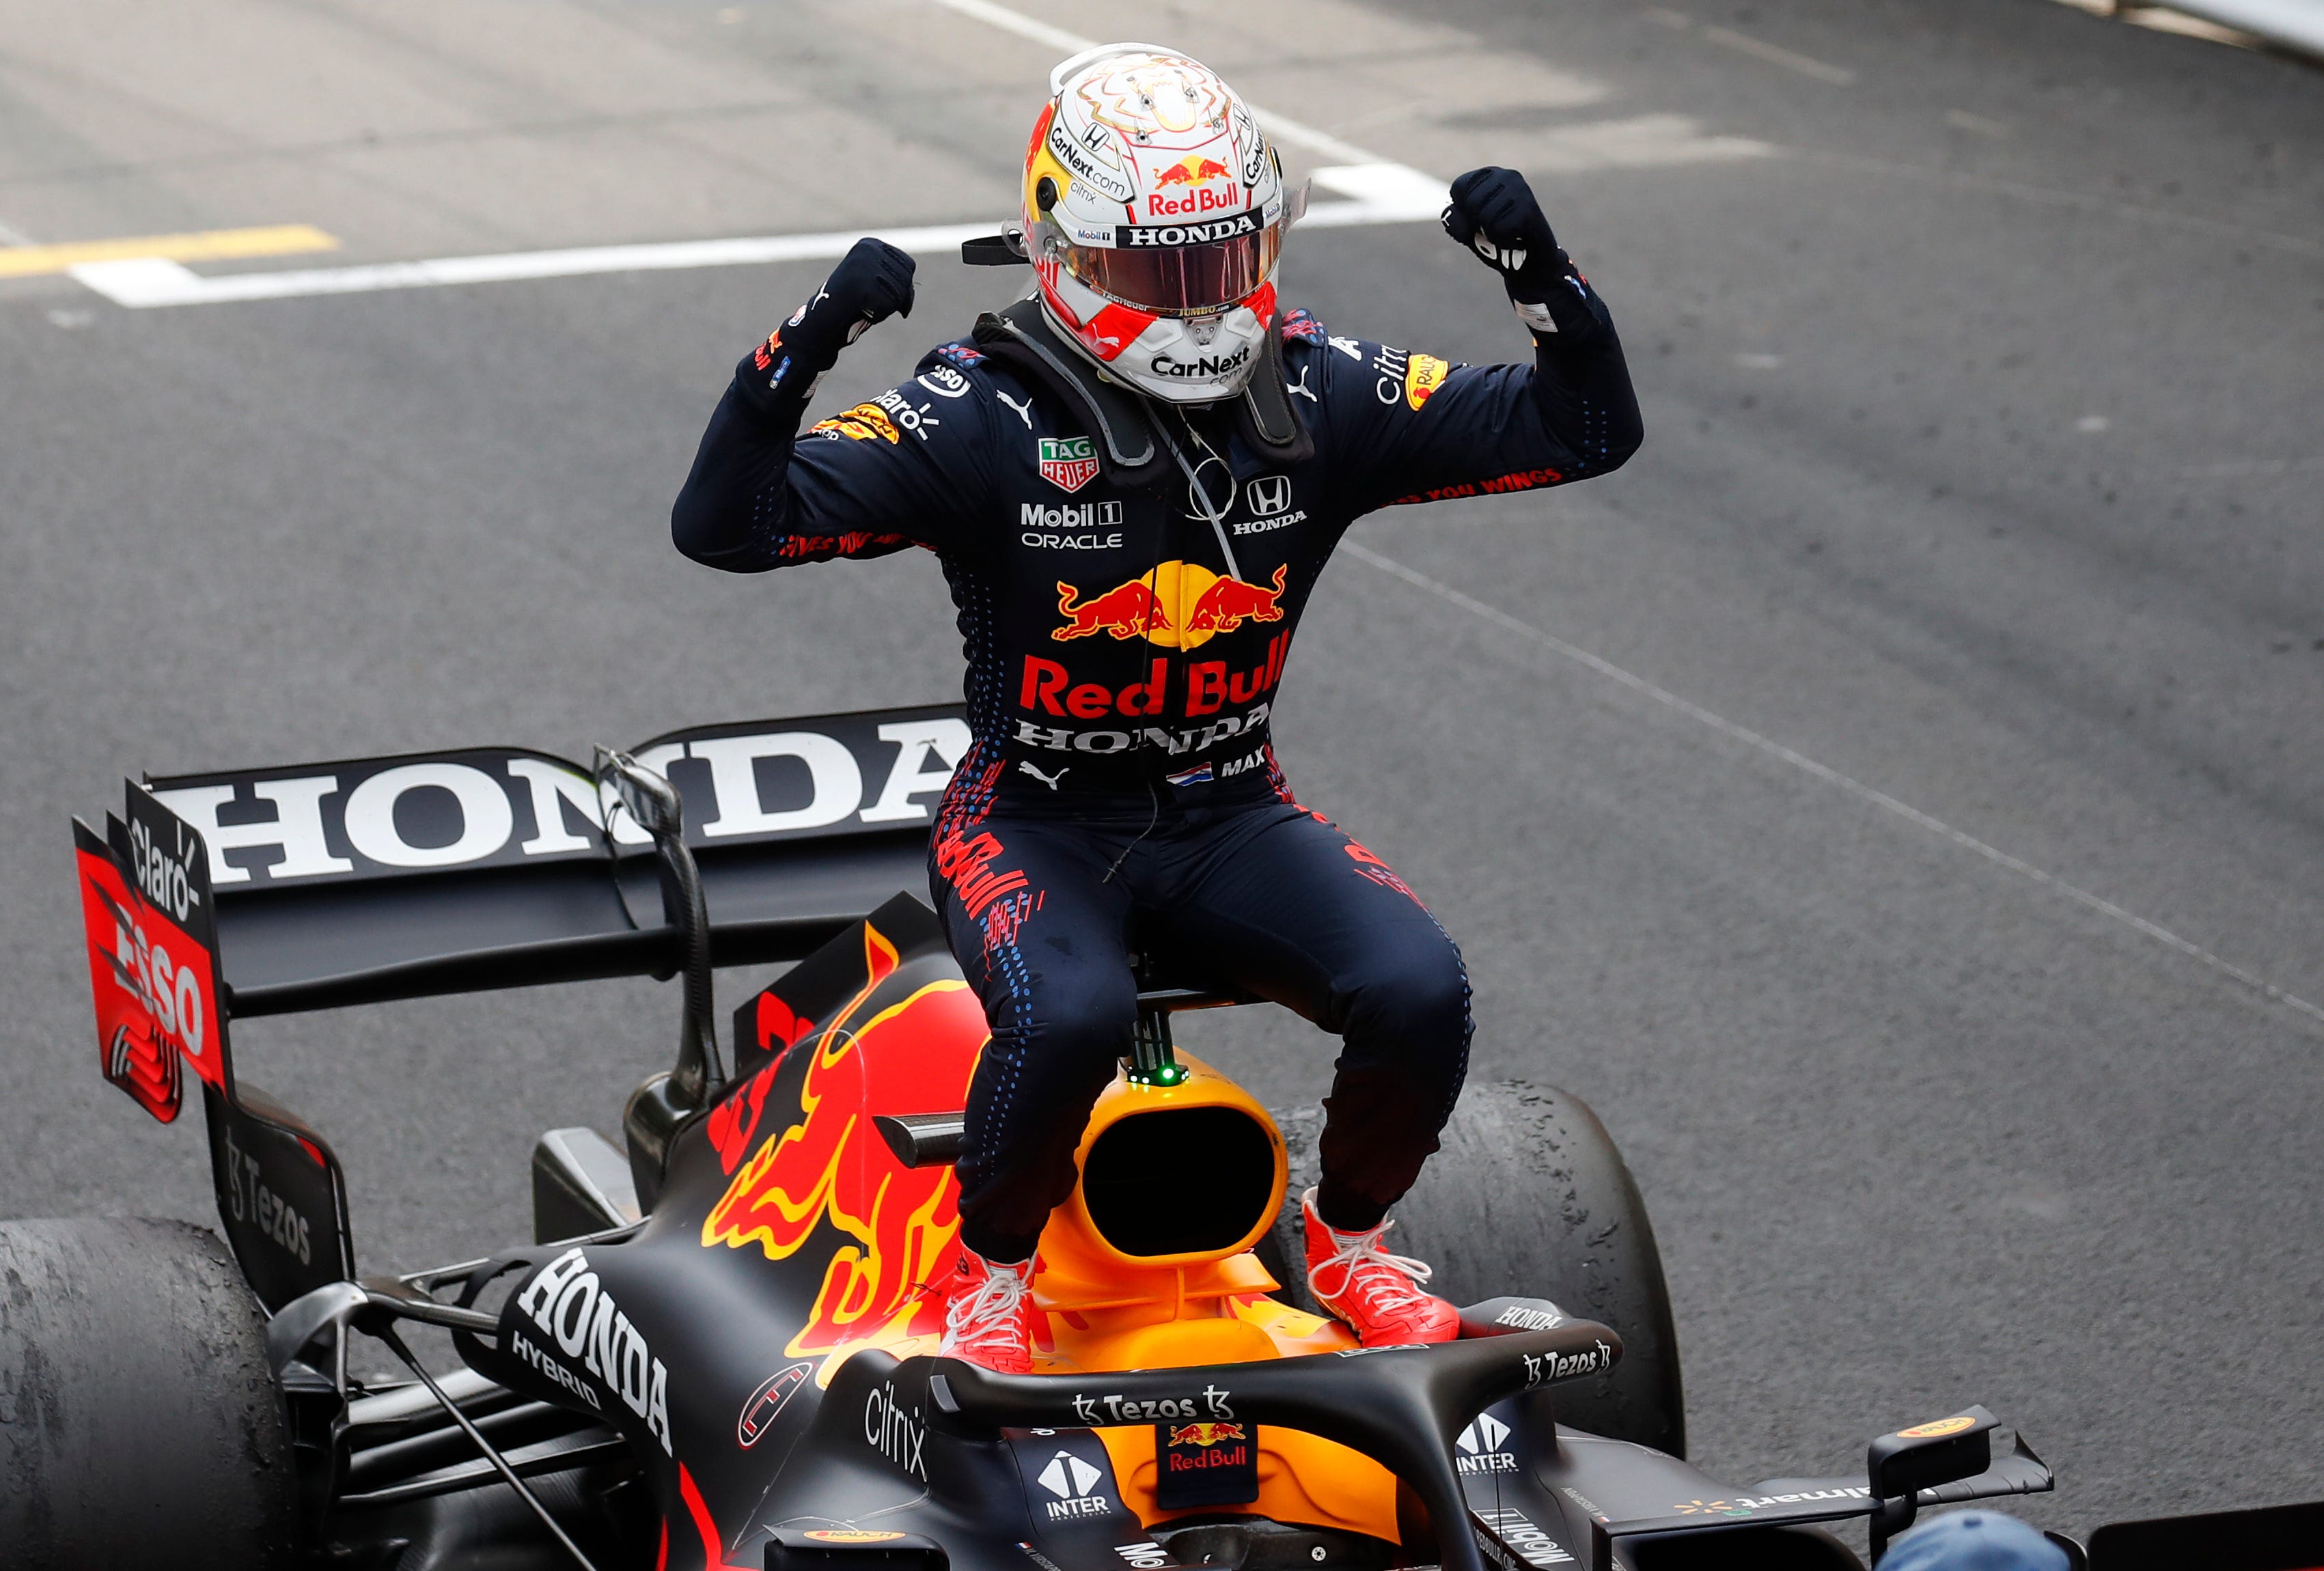 Monaco Grand Prix: Max Verstappen wins, takes F1 lead from Hamilton